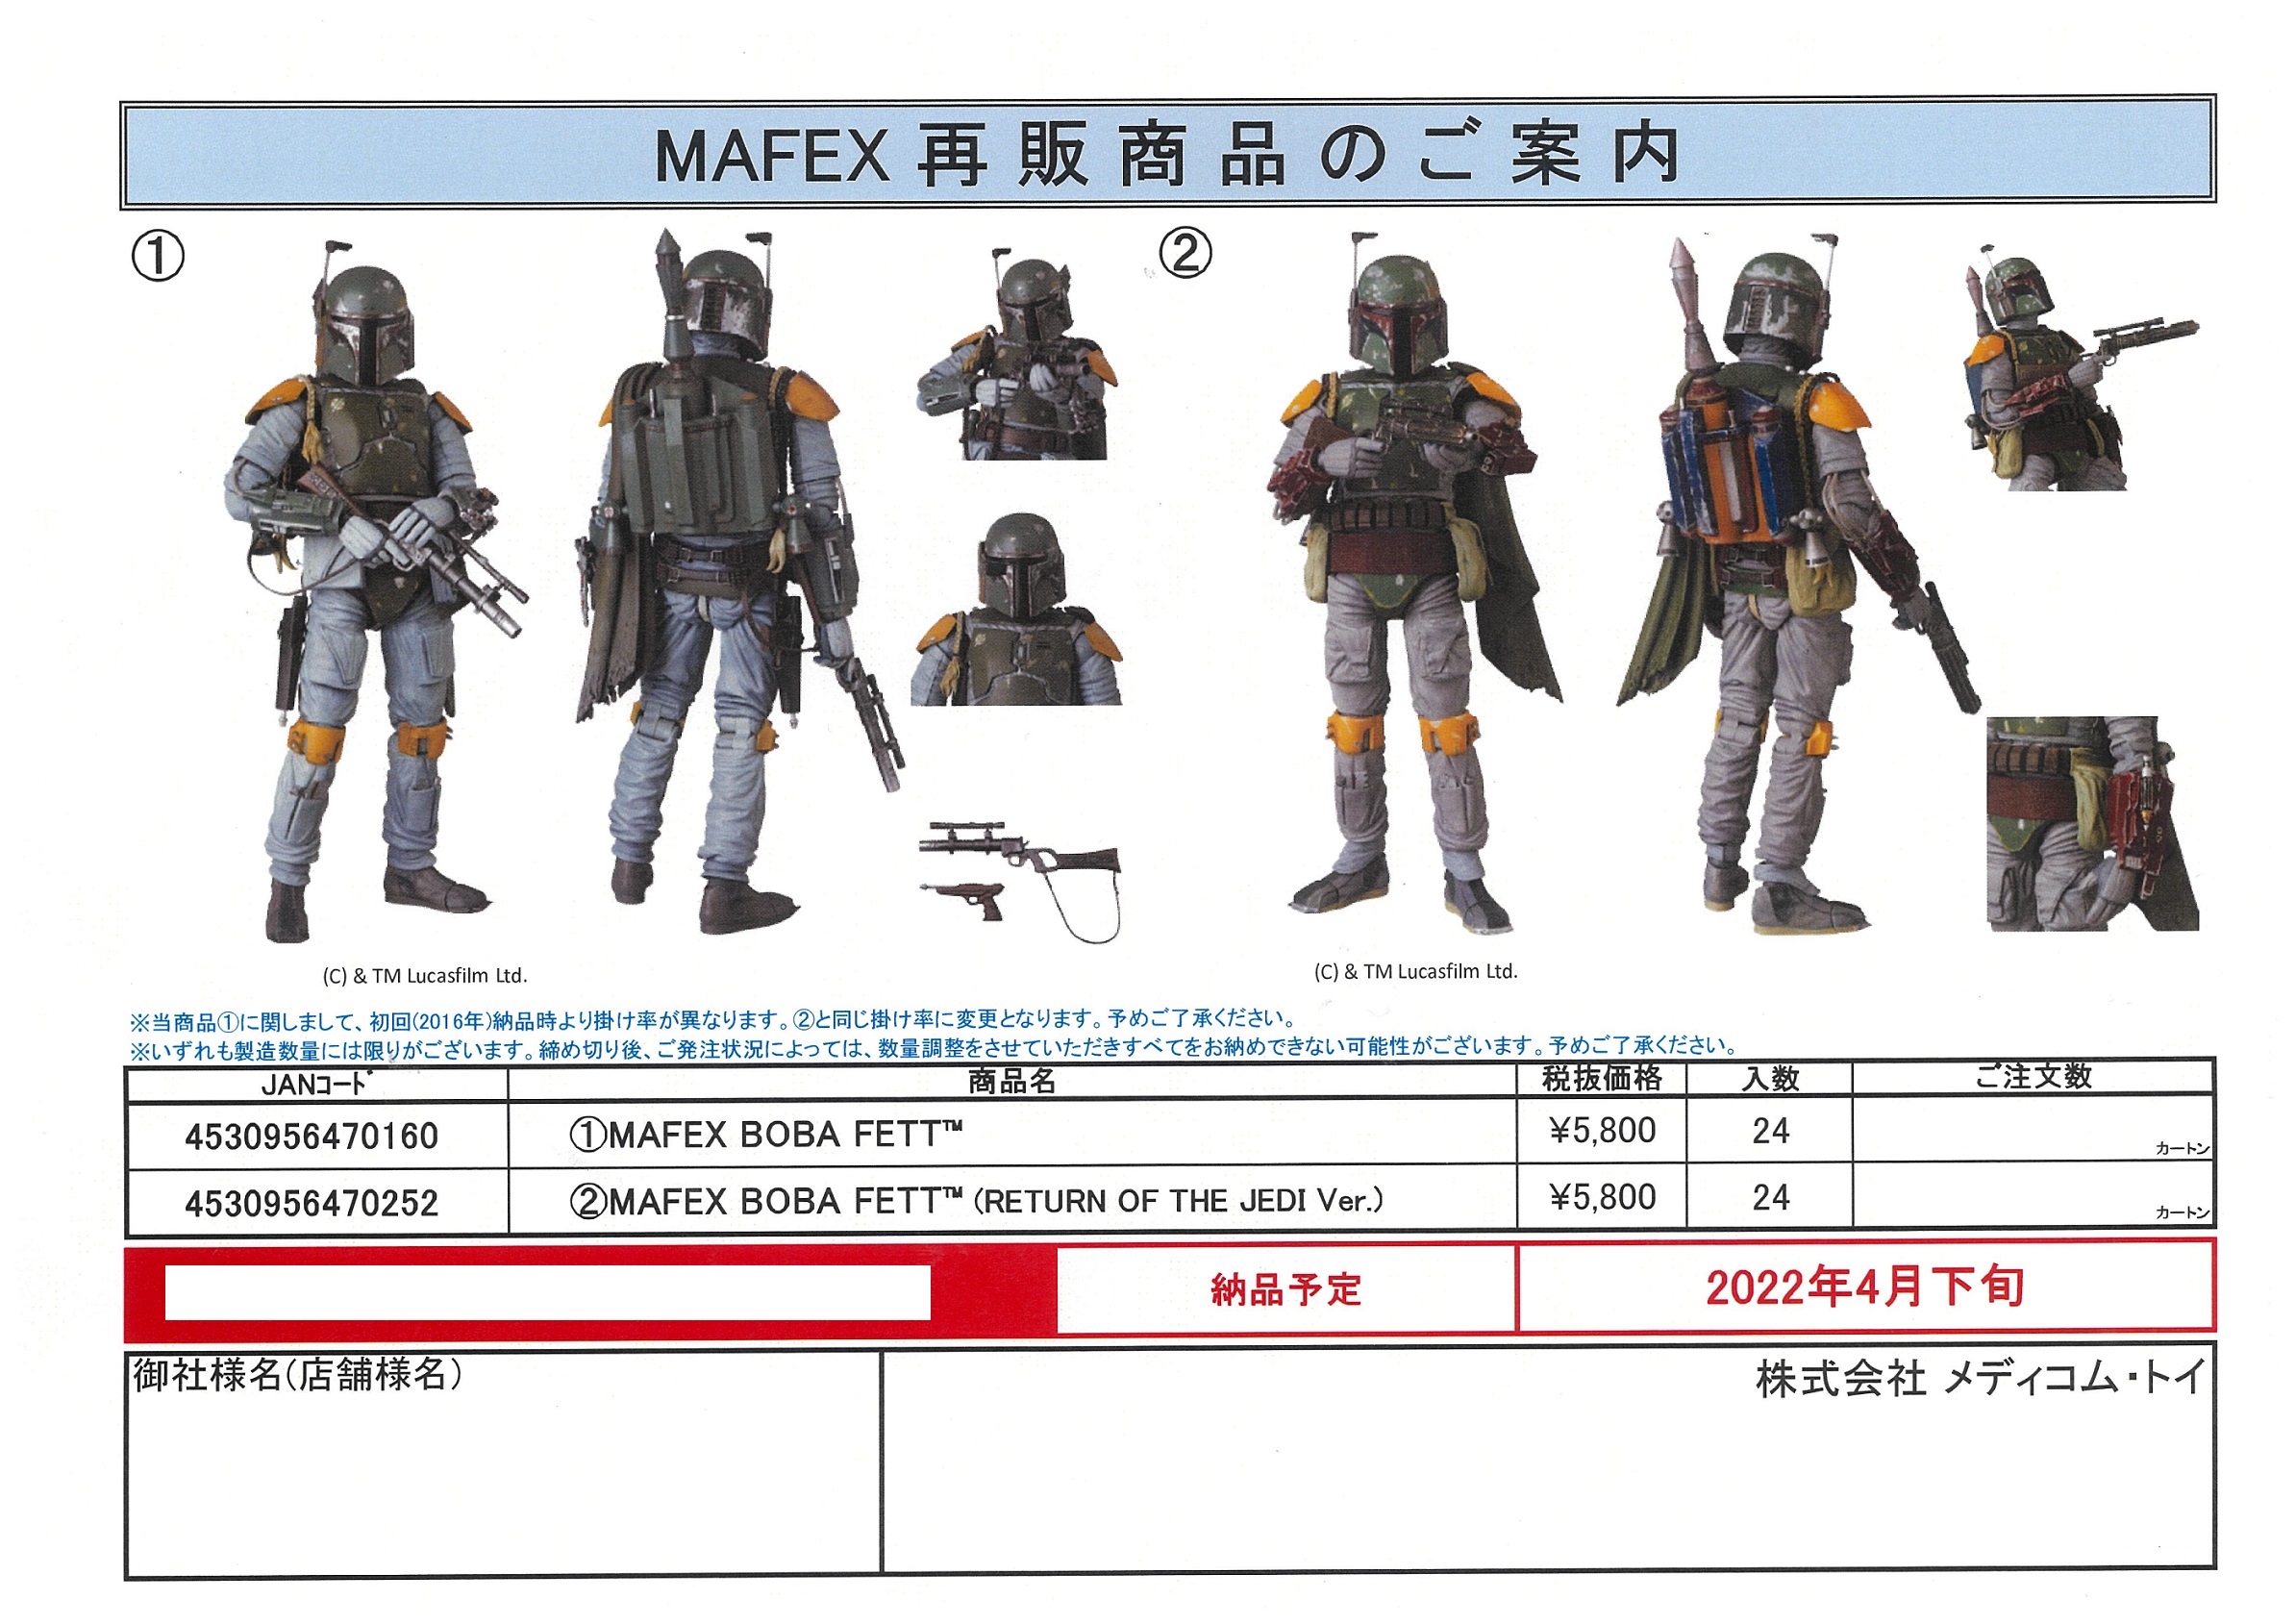 【A】可动手办 MAFEX 星球大战系列